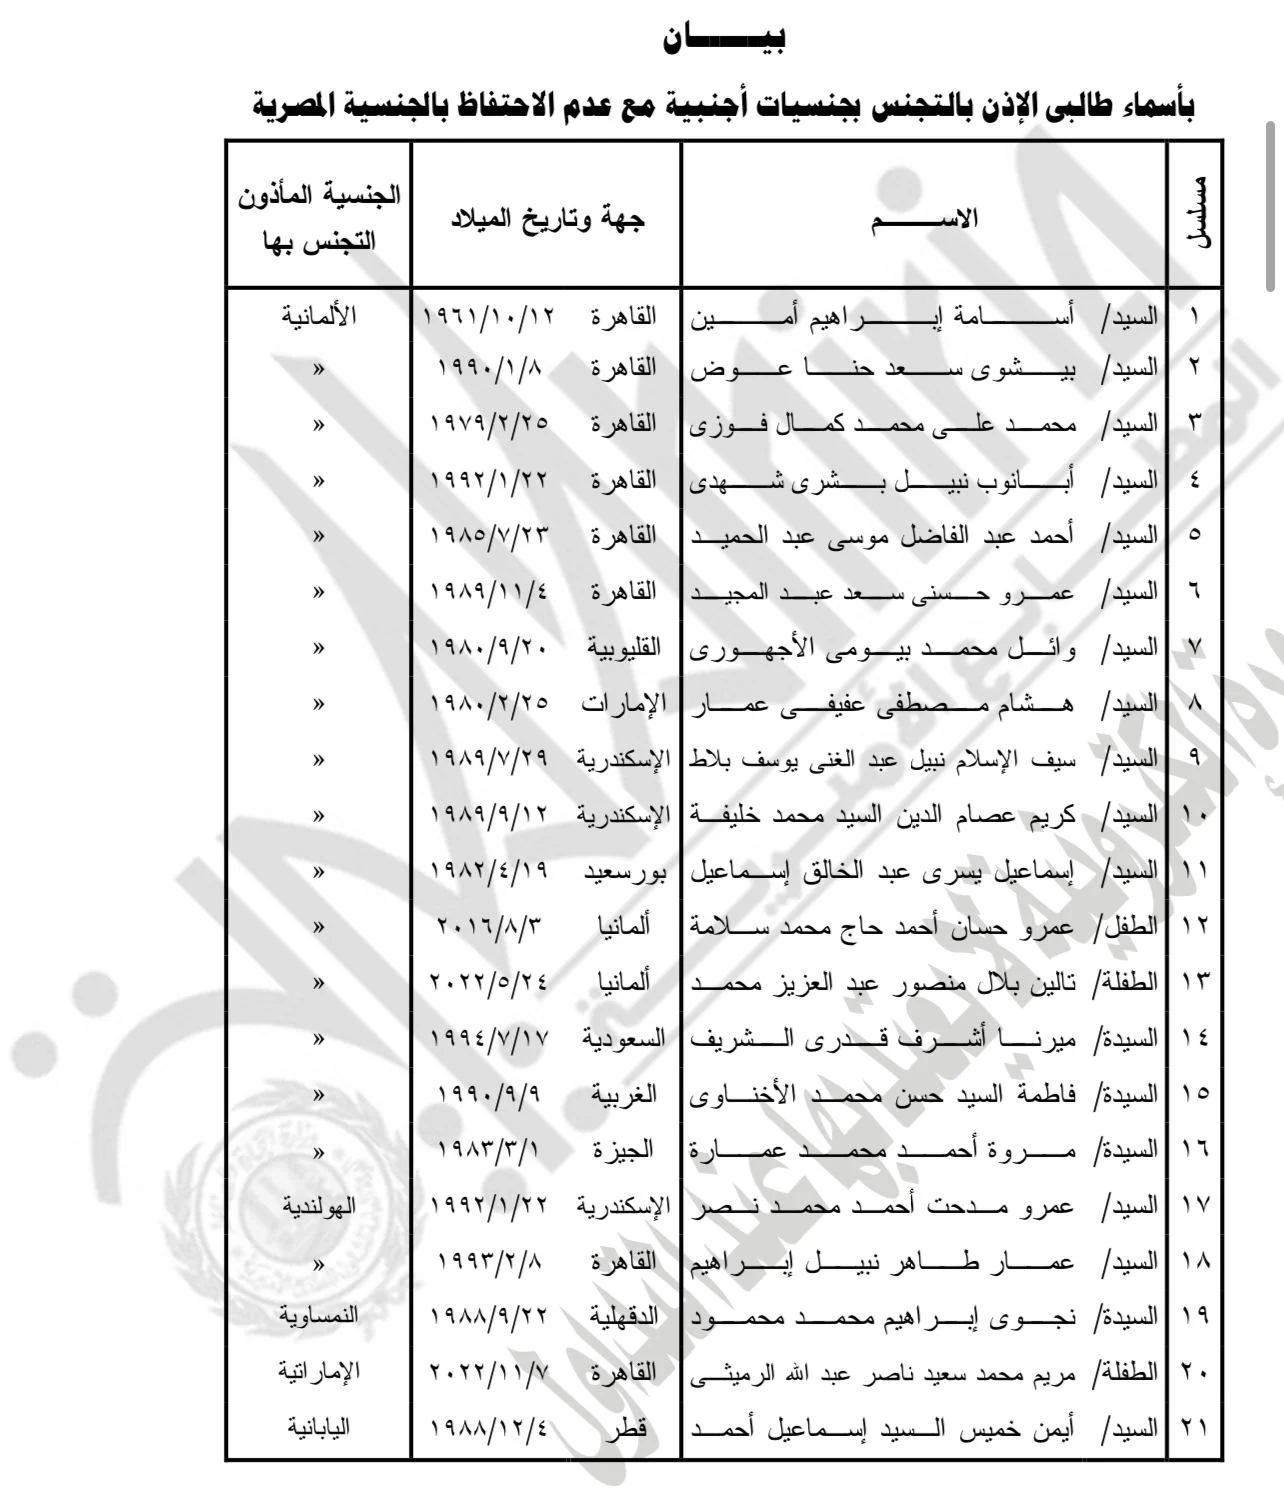 اسقاط الجنسية عن 21 مصري